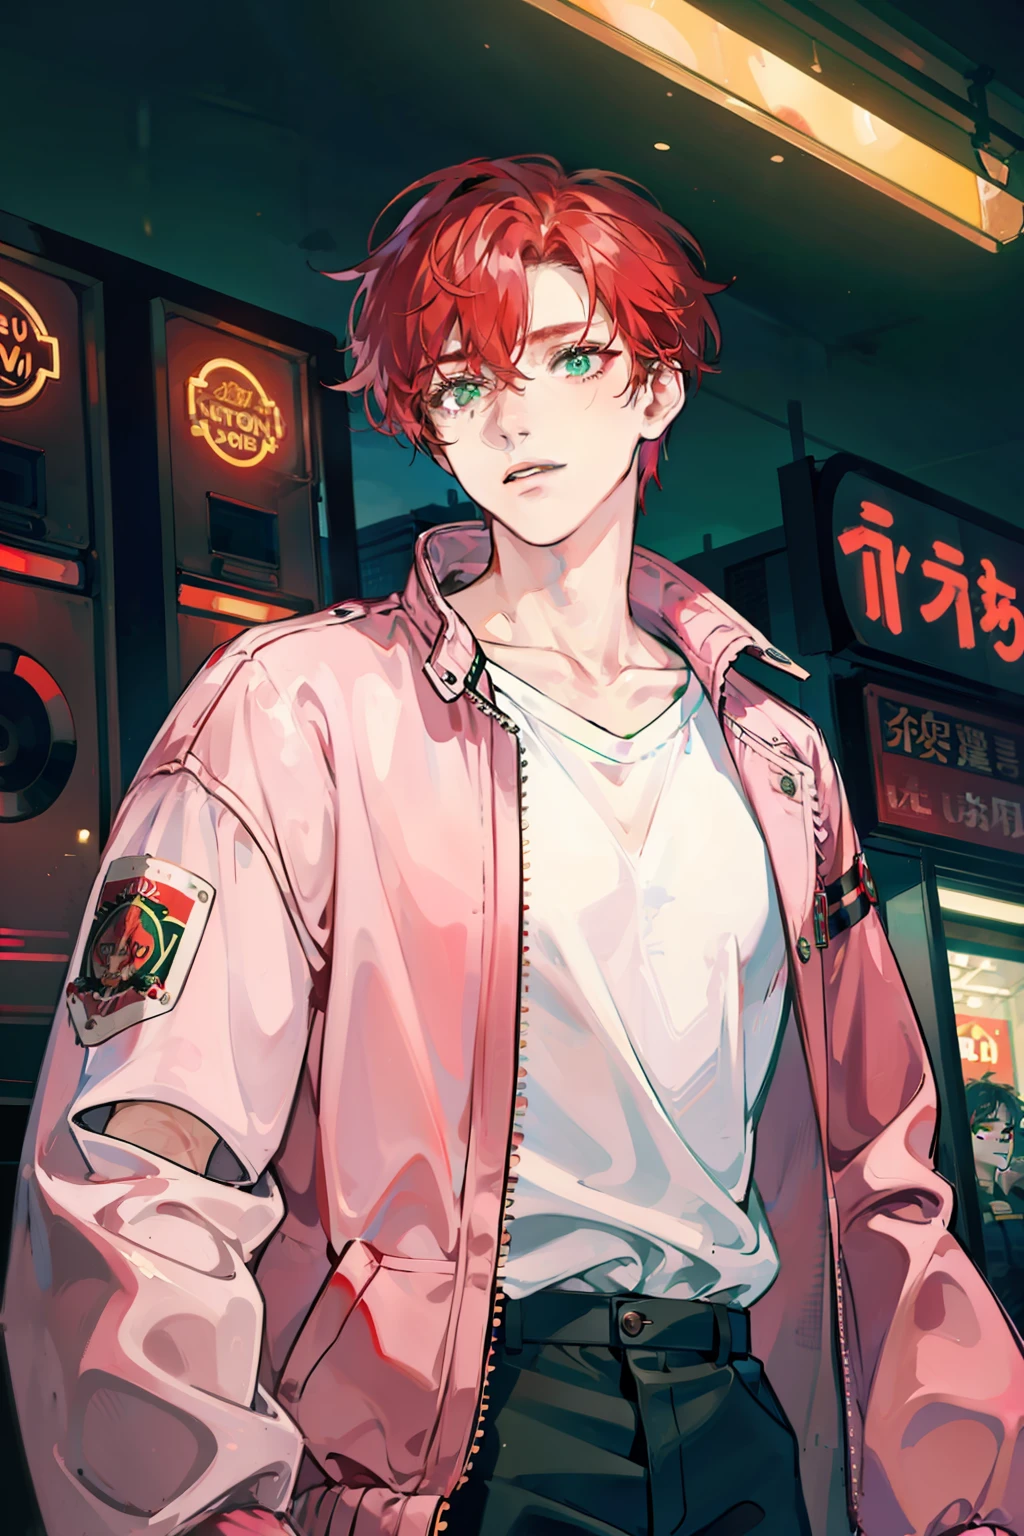 夜のネオン東京の明かりに満ちたアーケードで、ピンクと白のボンバージャケットを着た乱雑な血の赤い髪と緑の目を持つ若い男